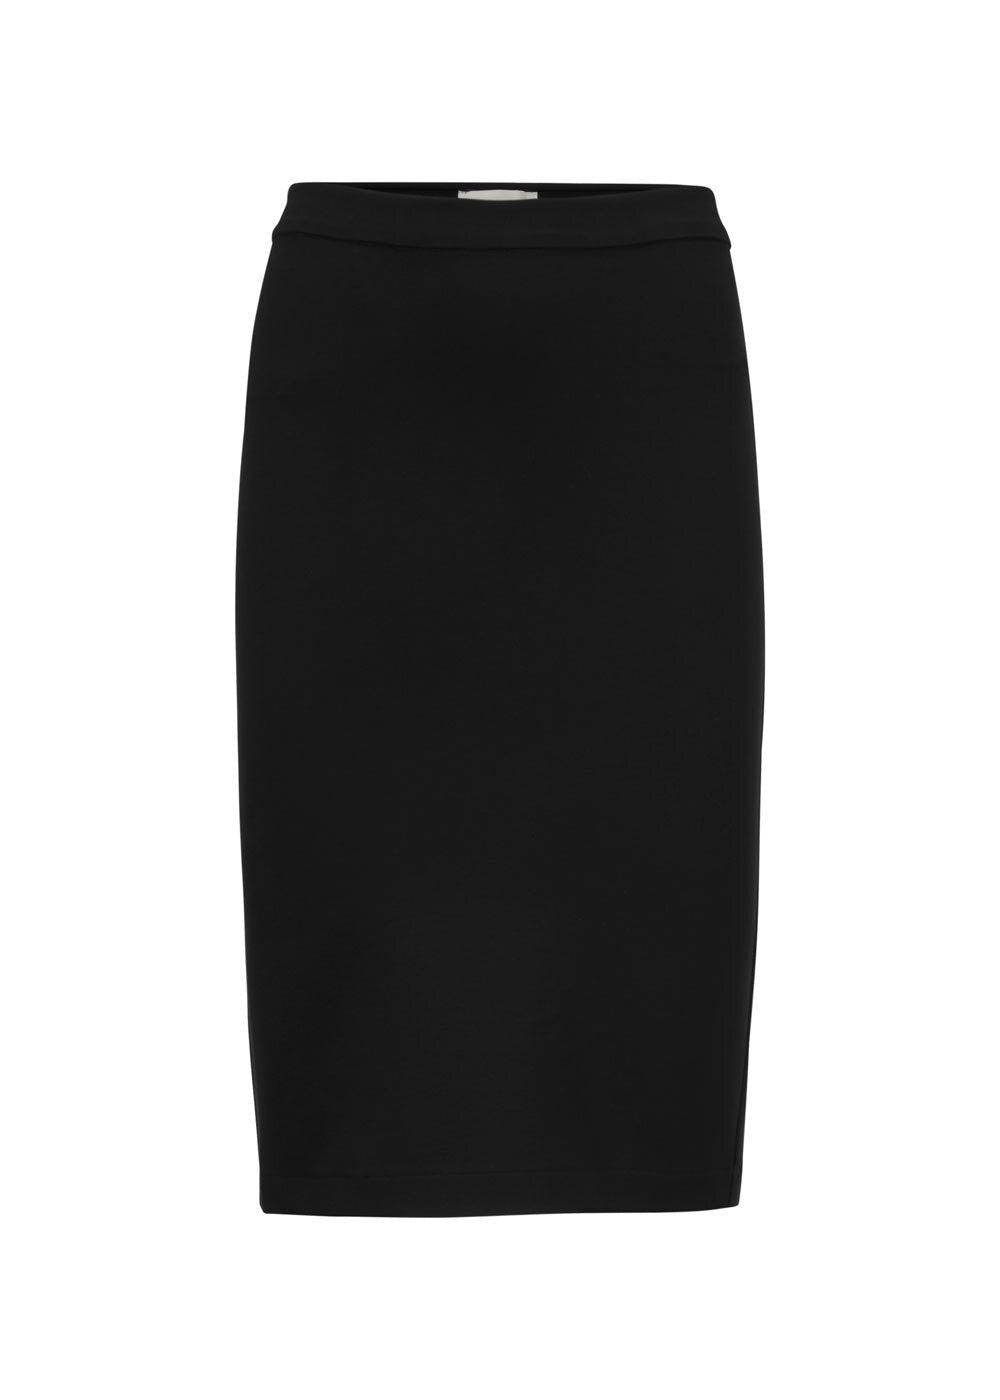 Modströms Tanny skirt - Black. Køb skirts her.